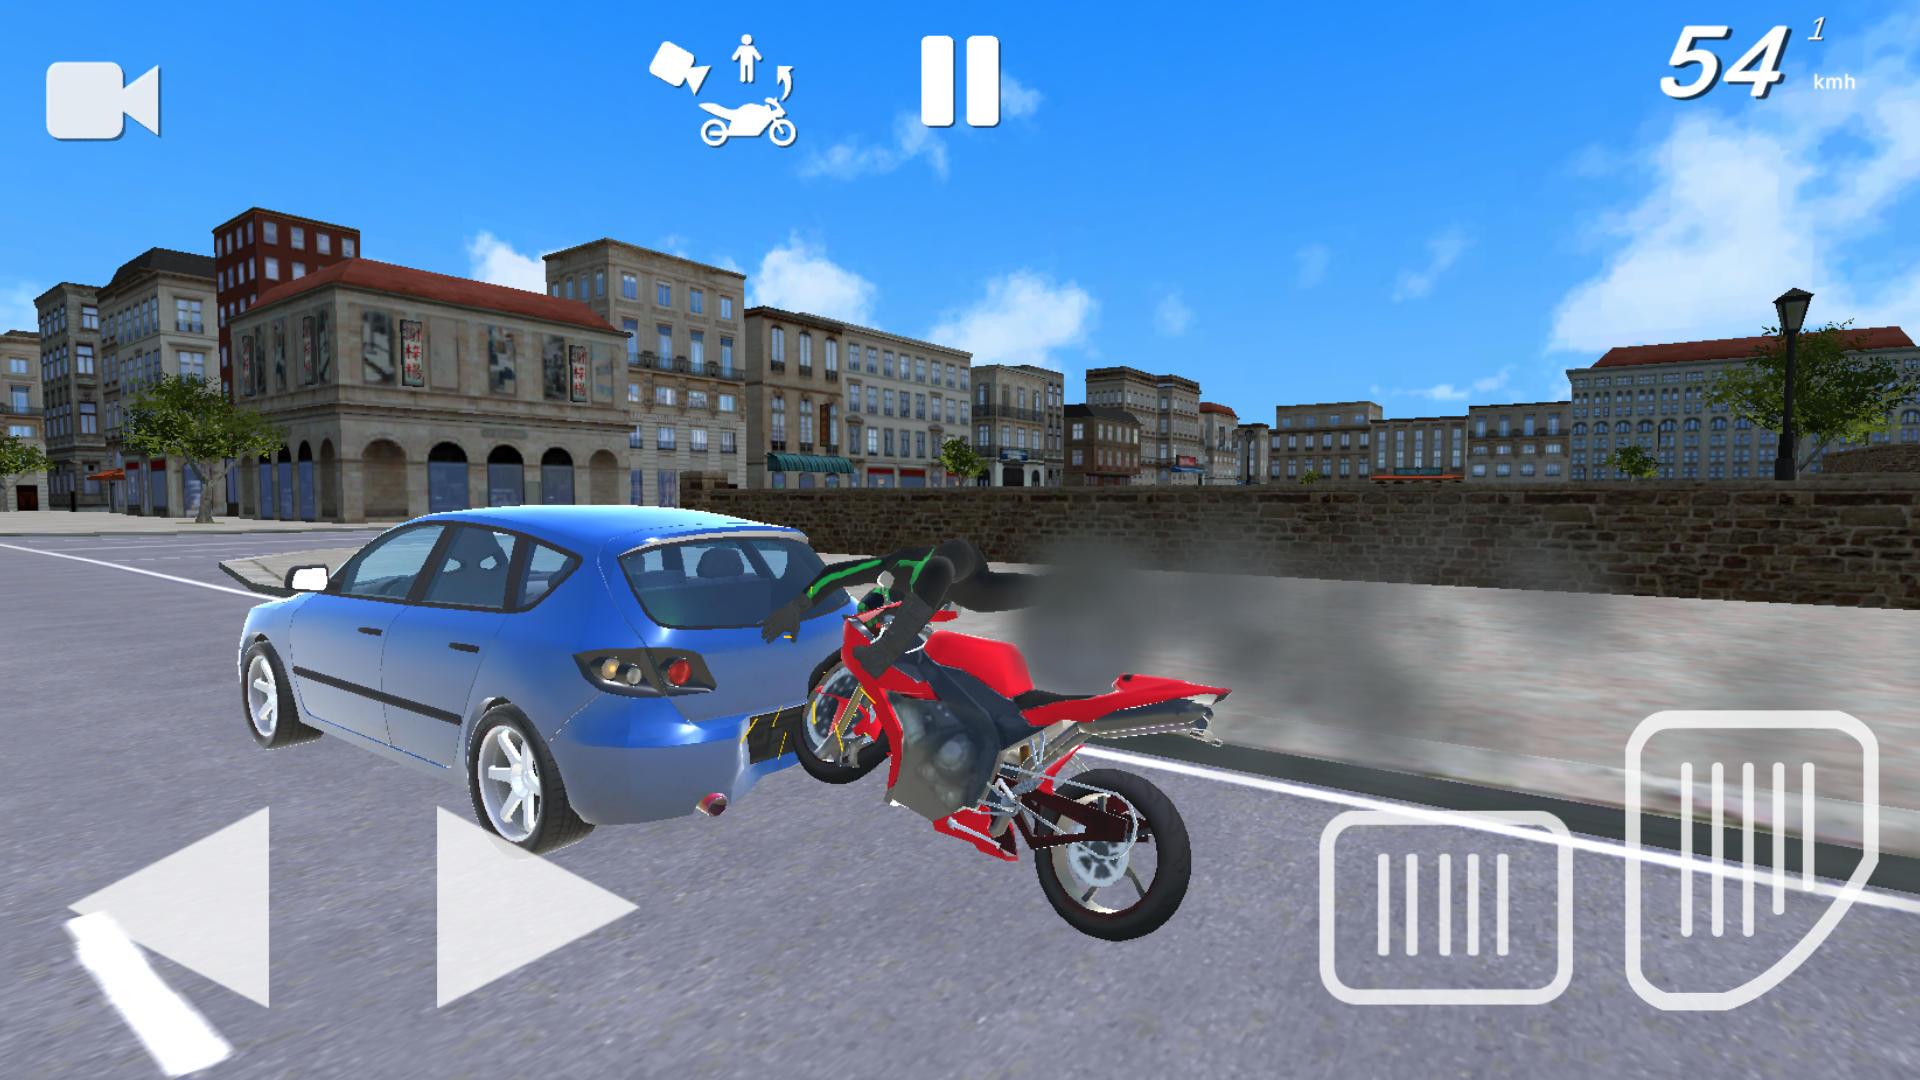 Screenshot 1 of Симулятор мотокатастрофы: Авария 2.1.14